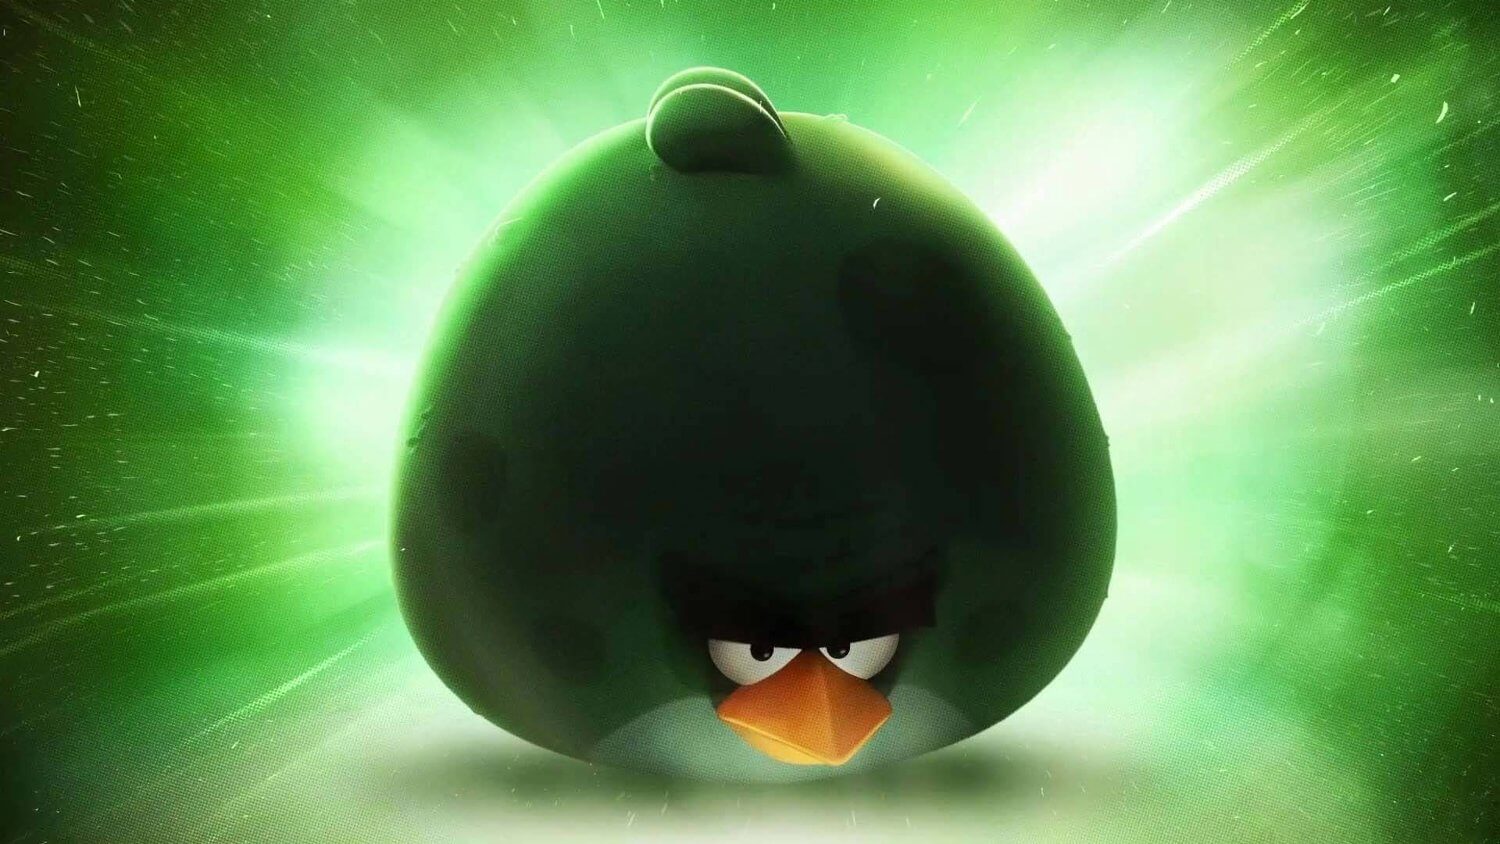 Игра Angry Birds стала темой сюжетов современного искусства